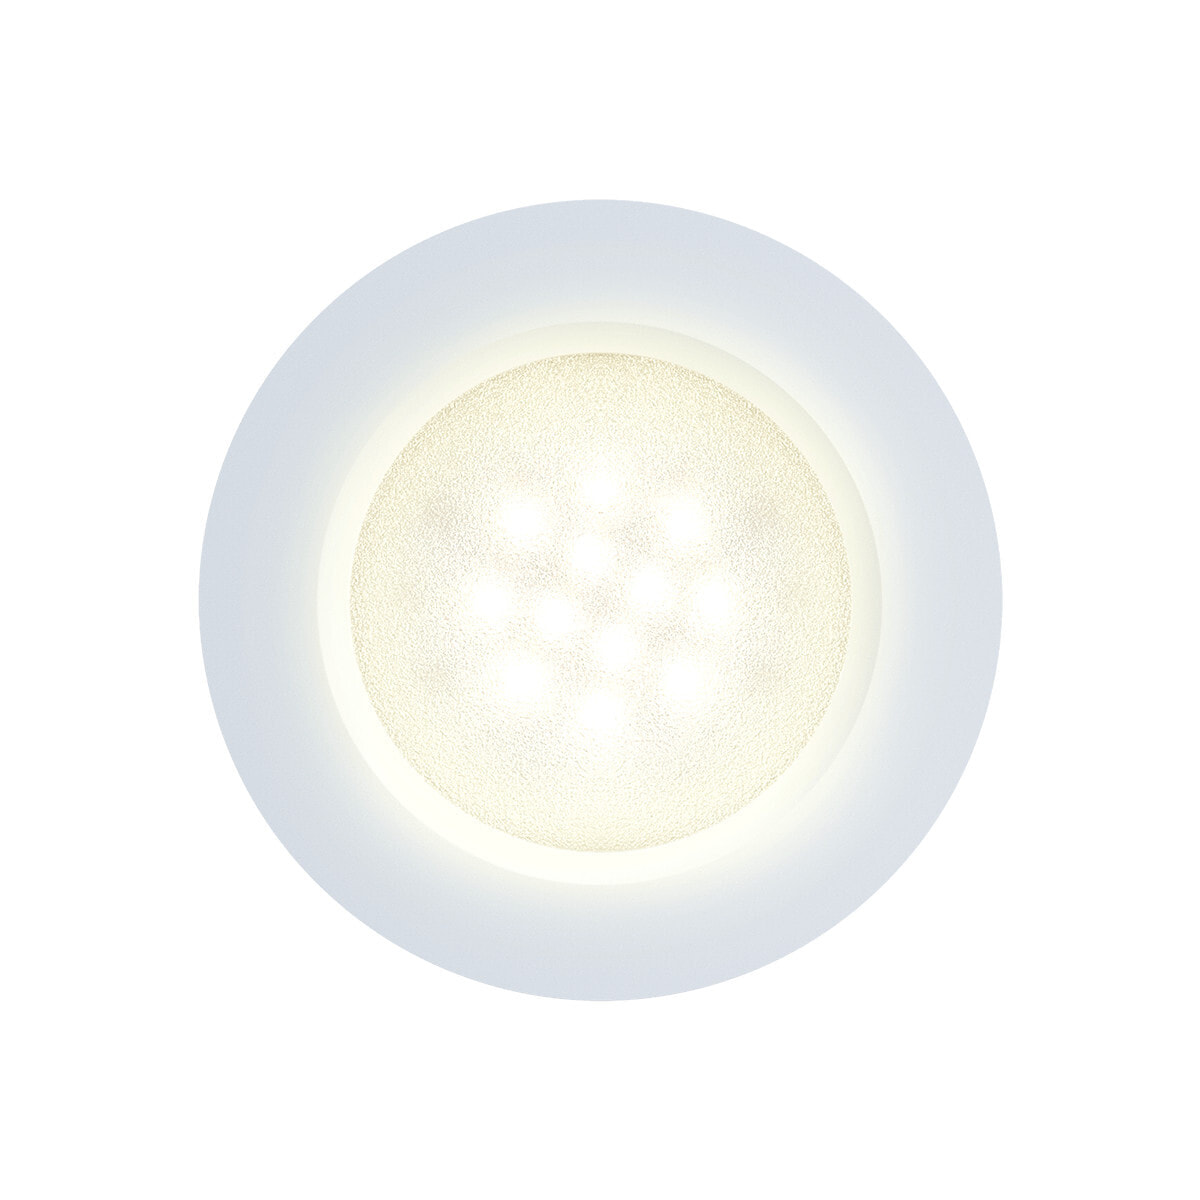 Innr Lighting PL 110 PUCK точечное освещение Углубленный точечный светильник Белый G4 Галоген 3 W